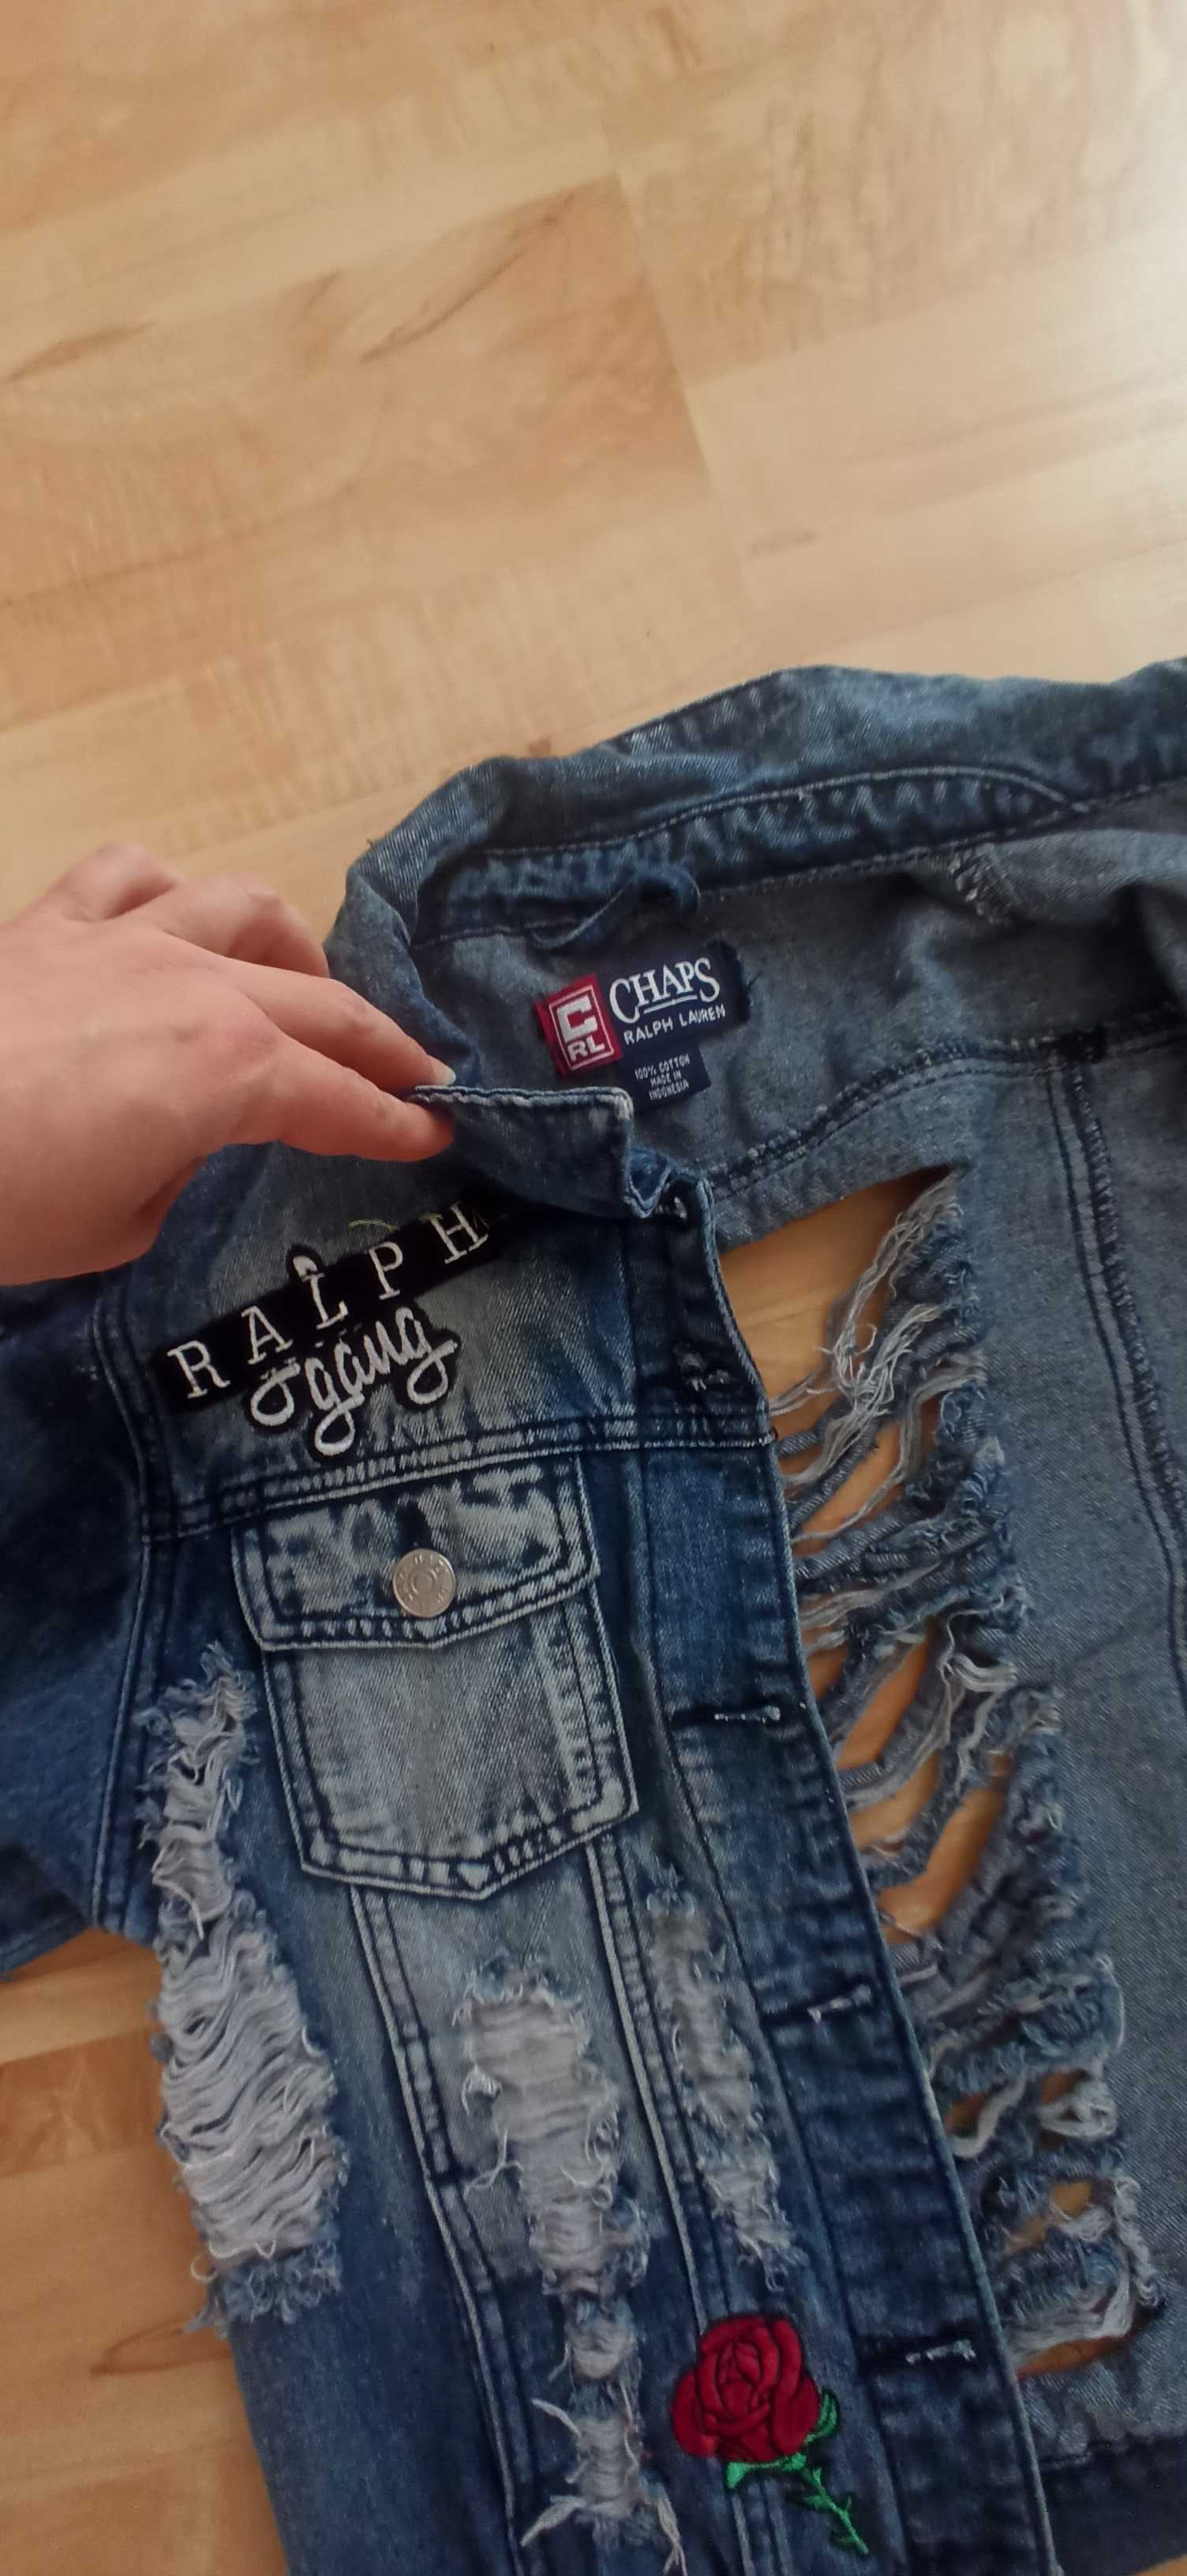 Ralph Lauren kurtka jeansowa